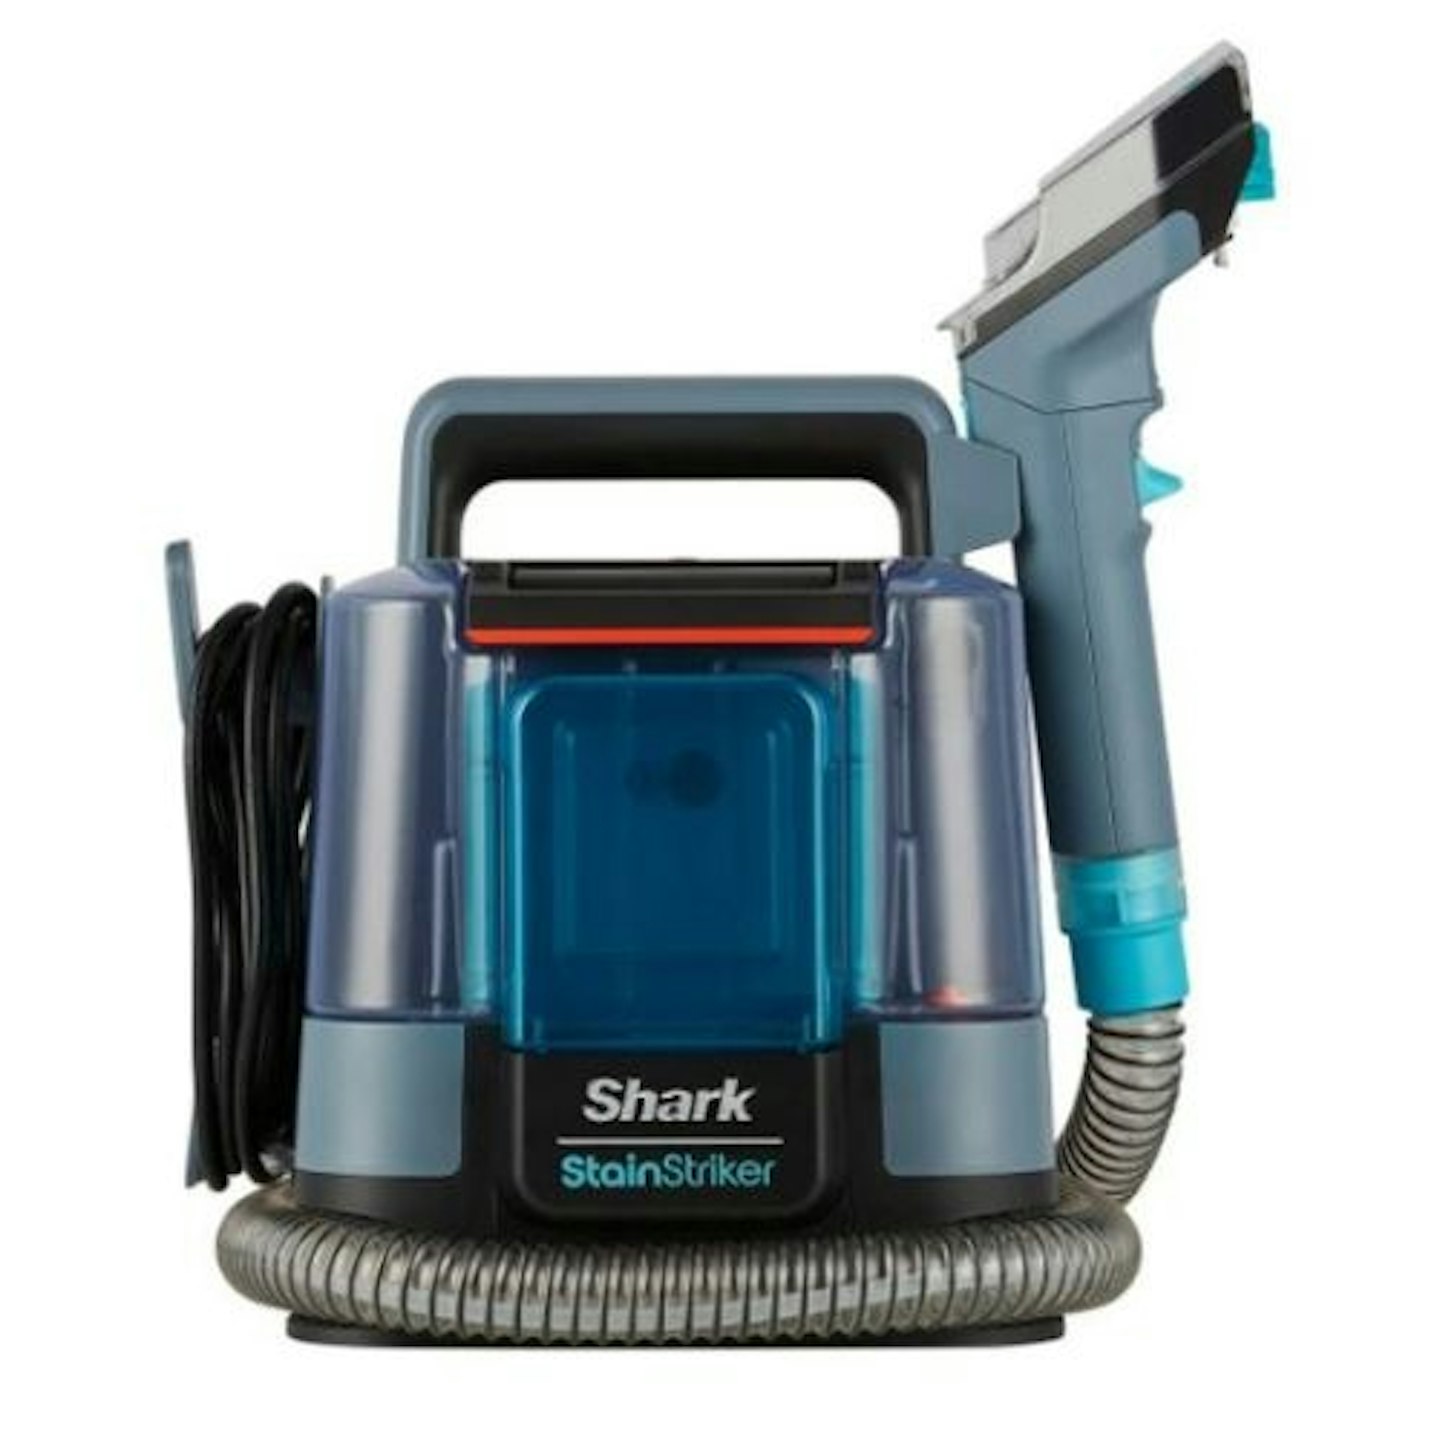 Shark StainStriker Stain Spot Cleaner